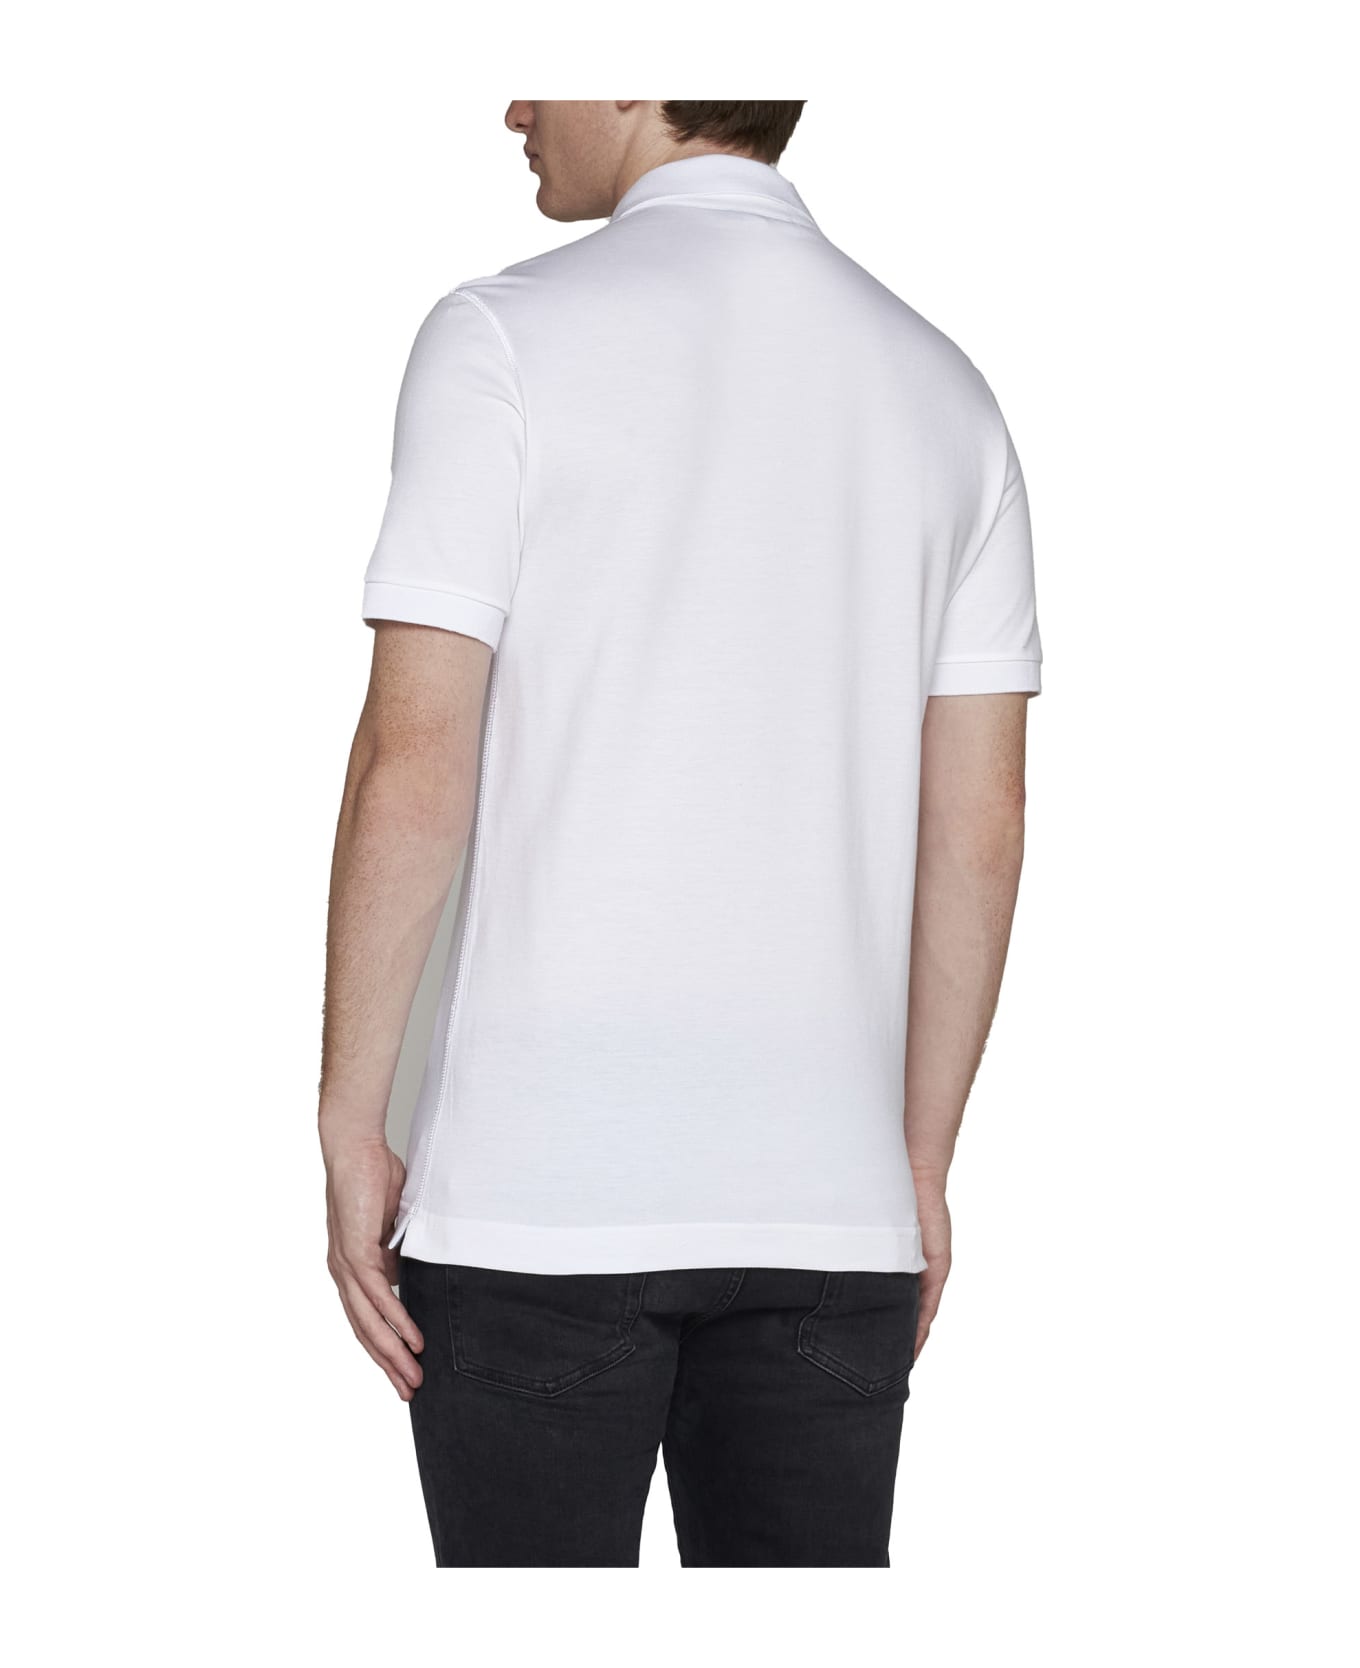 Dolce & Gabbana Polo Shirt - White